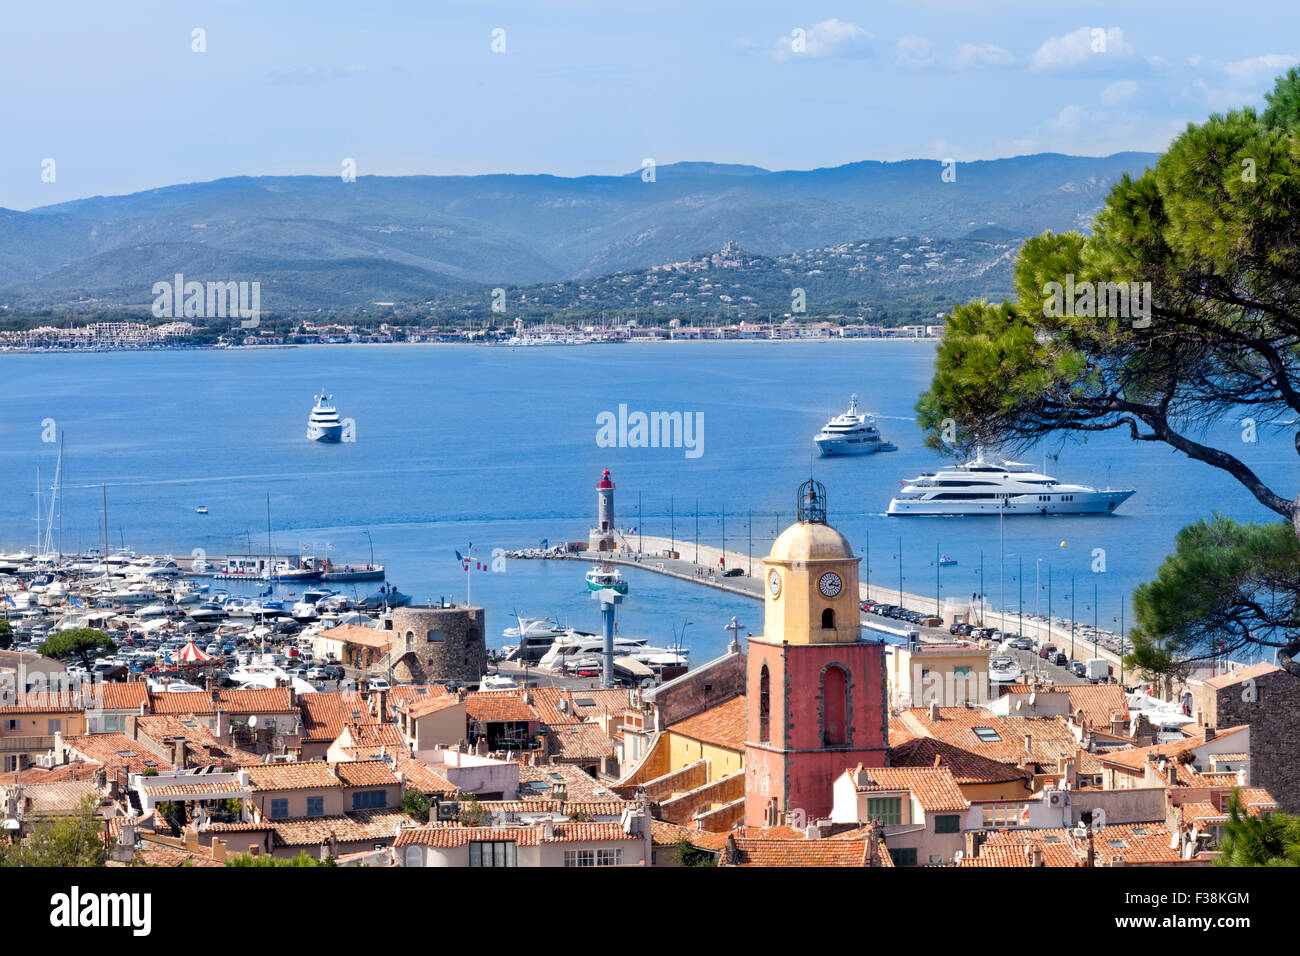 Vista superiore del famoso villaggio di pescatori di St Tropez in Costa Azzurra e mare con super yacht Foto Stock